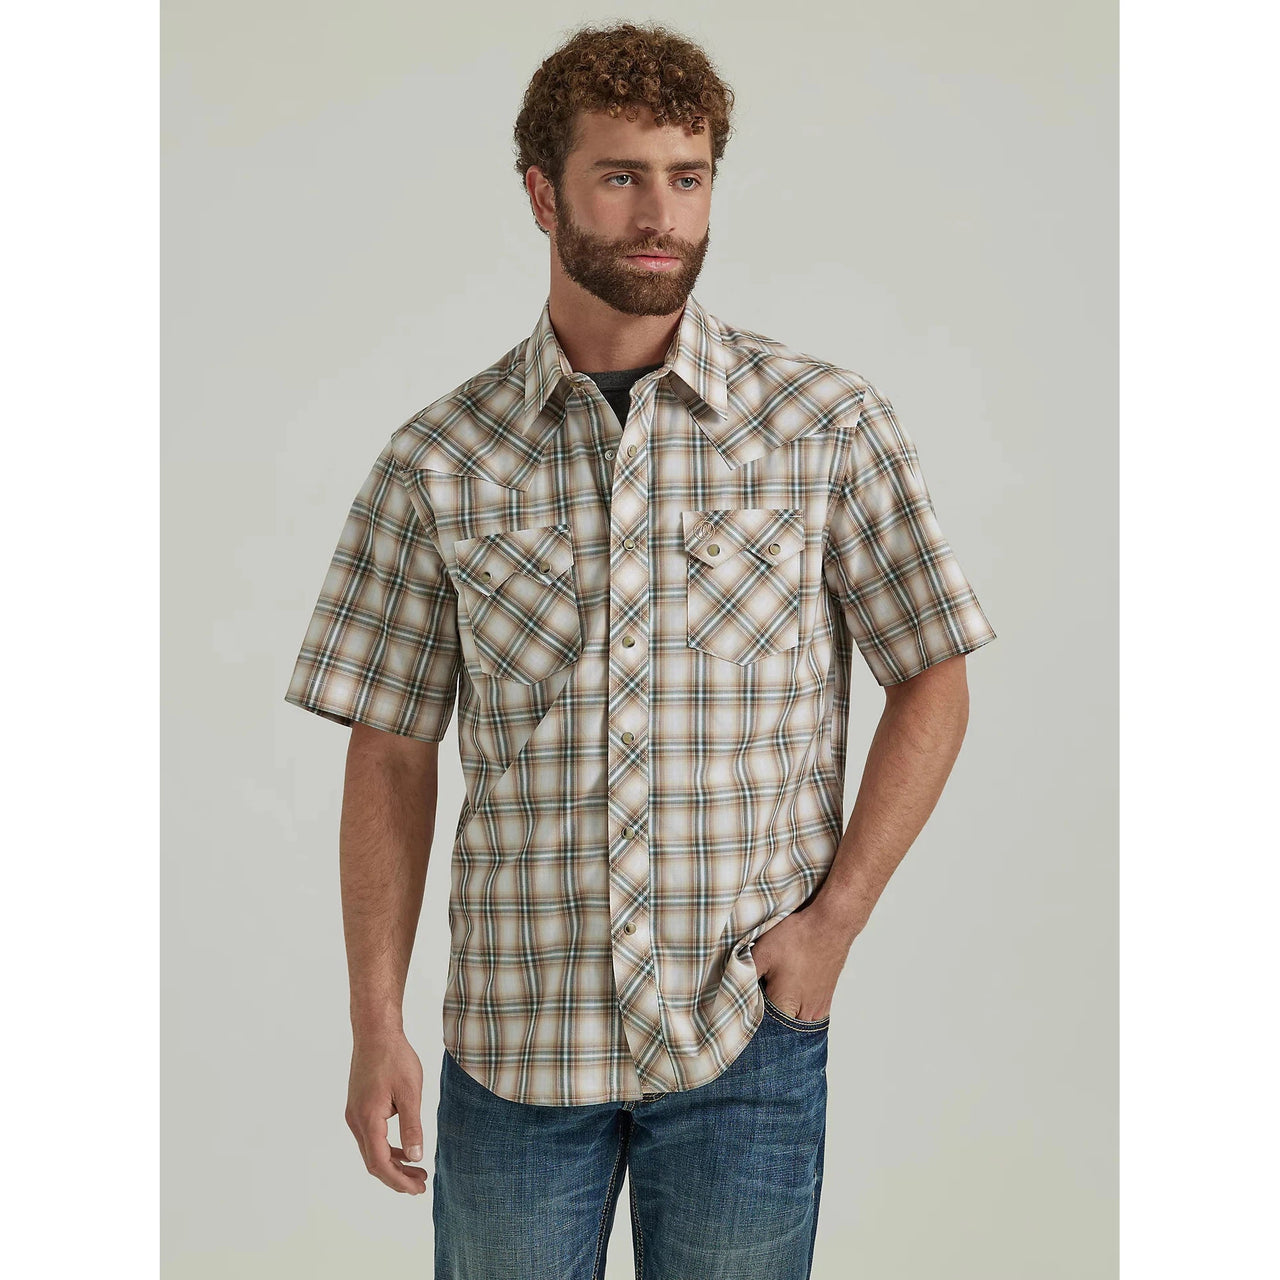 Wrangler Men's Retro Modern Fit Short Sleeve Shirt